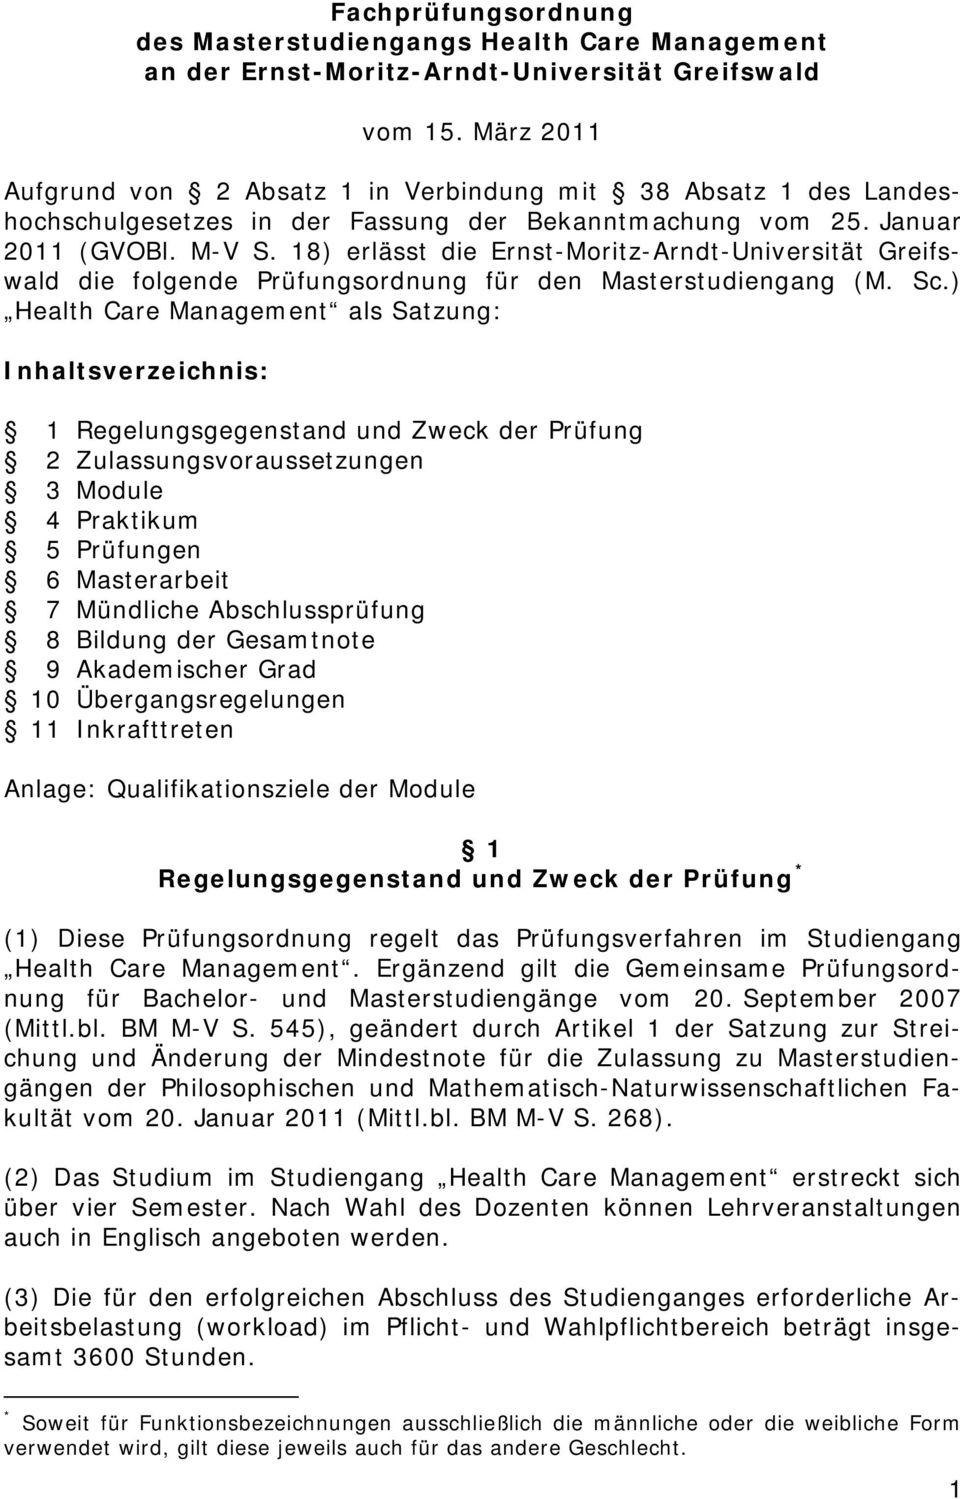 8) erlässt die Ernst-Moritz-Arndt-Universität Greifswald die folgende Prüfungsordnung für den Masterstudiengang (M. Sc.